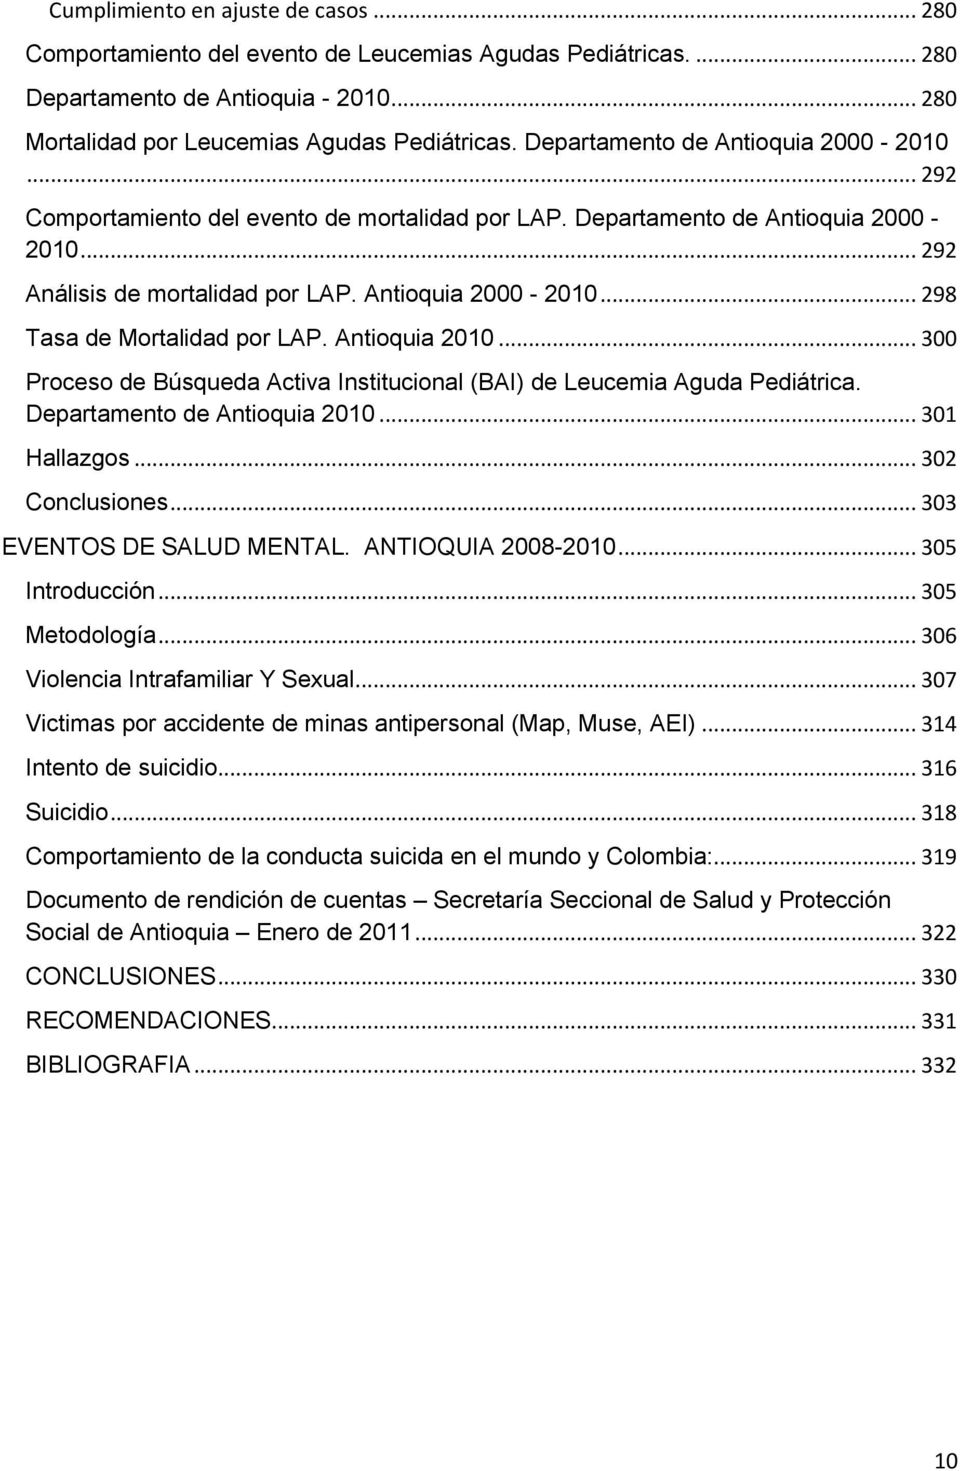 Antioquia 2010... 300 Proceso de Búsqueda Activa Institucional (BAI) de Leucemia Aguda Pediátrica. Departamento de Antioquia 2010... 301 Hallazgos... 302 Conclusiones... 303 EVENTOS DE SALUD MENTAL.